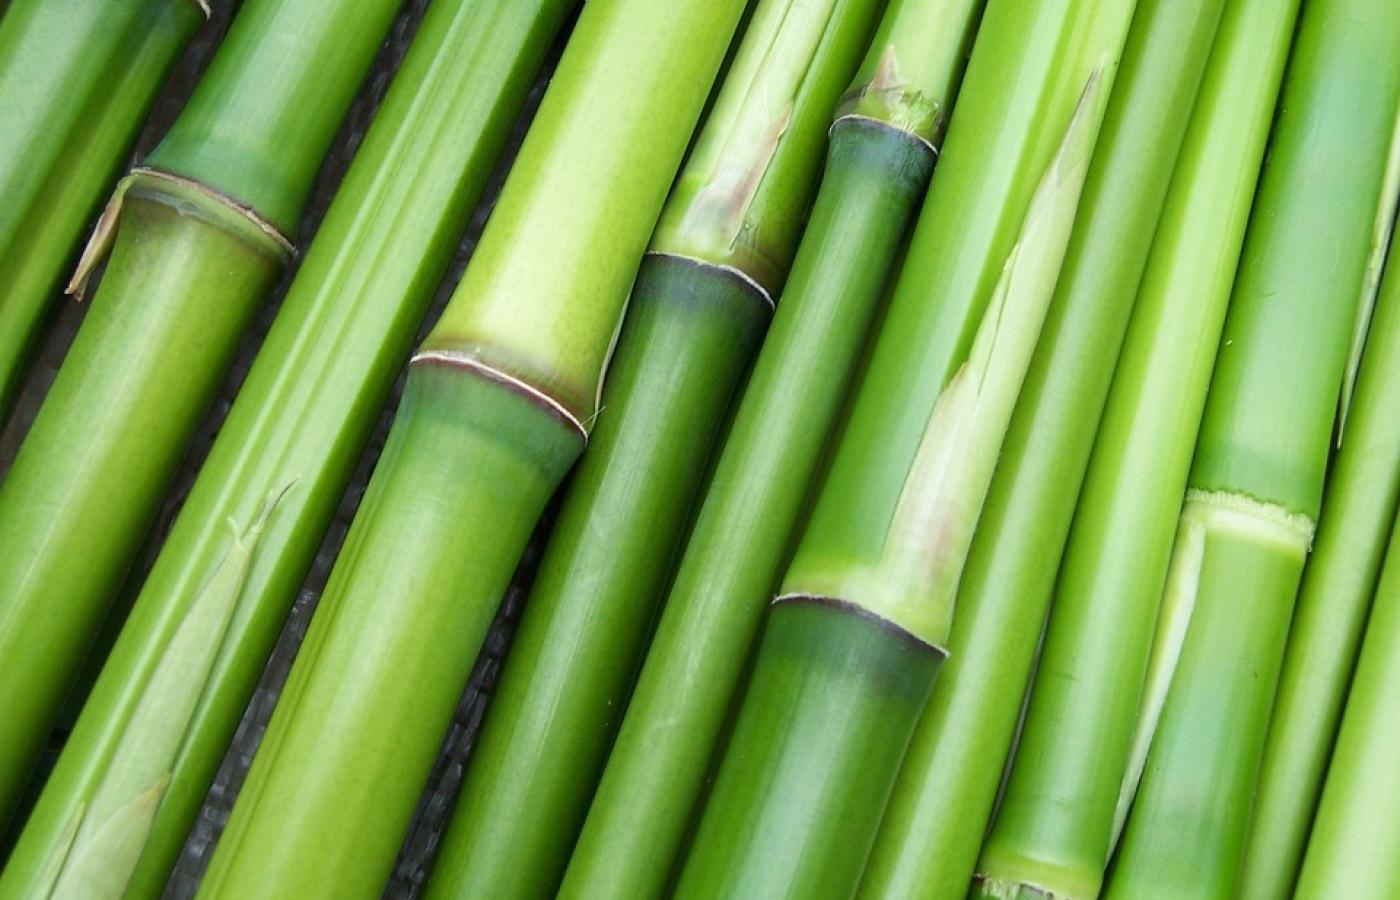 A jak ogrzać stopy? Świetnie sprawdzą się w tej roli skarpety zrobione z bambusa. Tkanina, z której są wykonane, zawiera w swoim składzie bambusowe włókna, przędzę czy miąższ z trawy bambusowej. Producenci zapewniają, że tkanina ma dodatkowe właściwości: antybakteryjne, antygrzybiczne czy pochłaniające wilgoć. Jest też przewiewna, przyjemna w dotyku i likwiduje przykre zapachy. Oprócz skarpet możemy zaopatrzyć się w bambusową bieliznę, ręczniki czy ubrania.